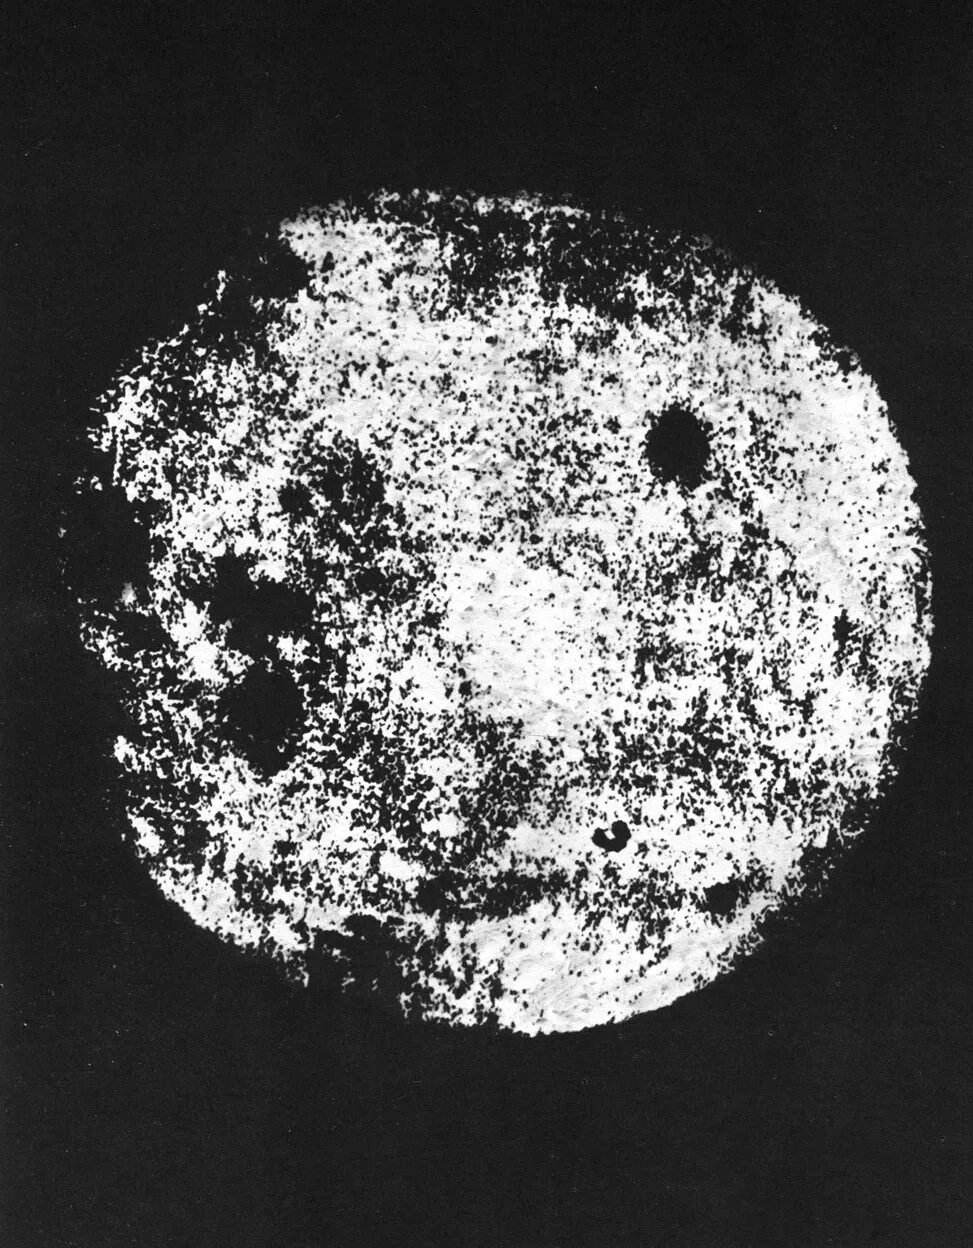 Изображение обратной стороны луны. Обратная сторона Луны 1959. Снимки Луны 1959. Луна 3 снимки обратной стороны Луны. Снимок обратной стороны Луны 1959.